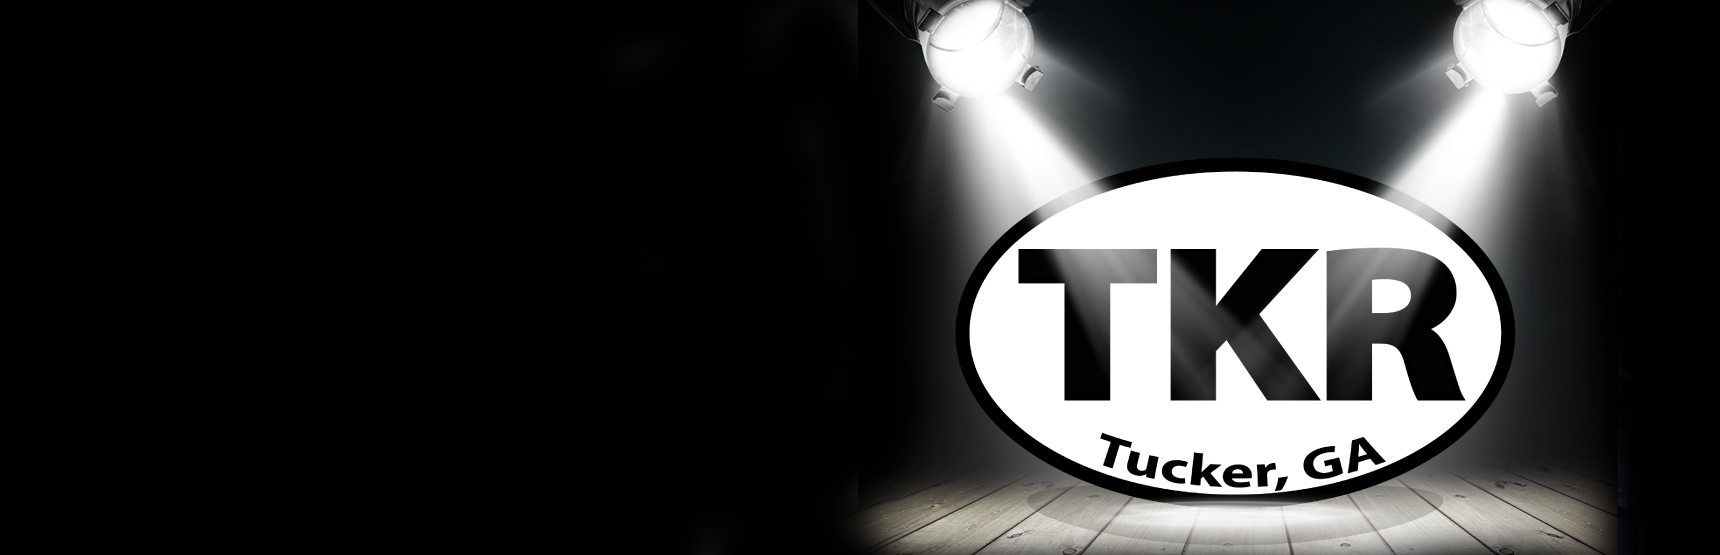 TKR spotlight